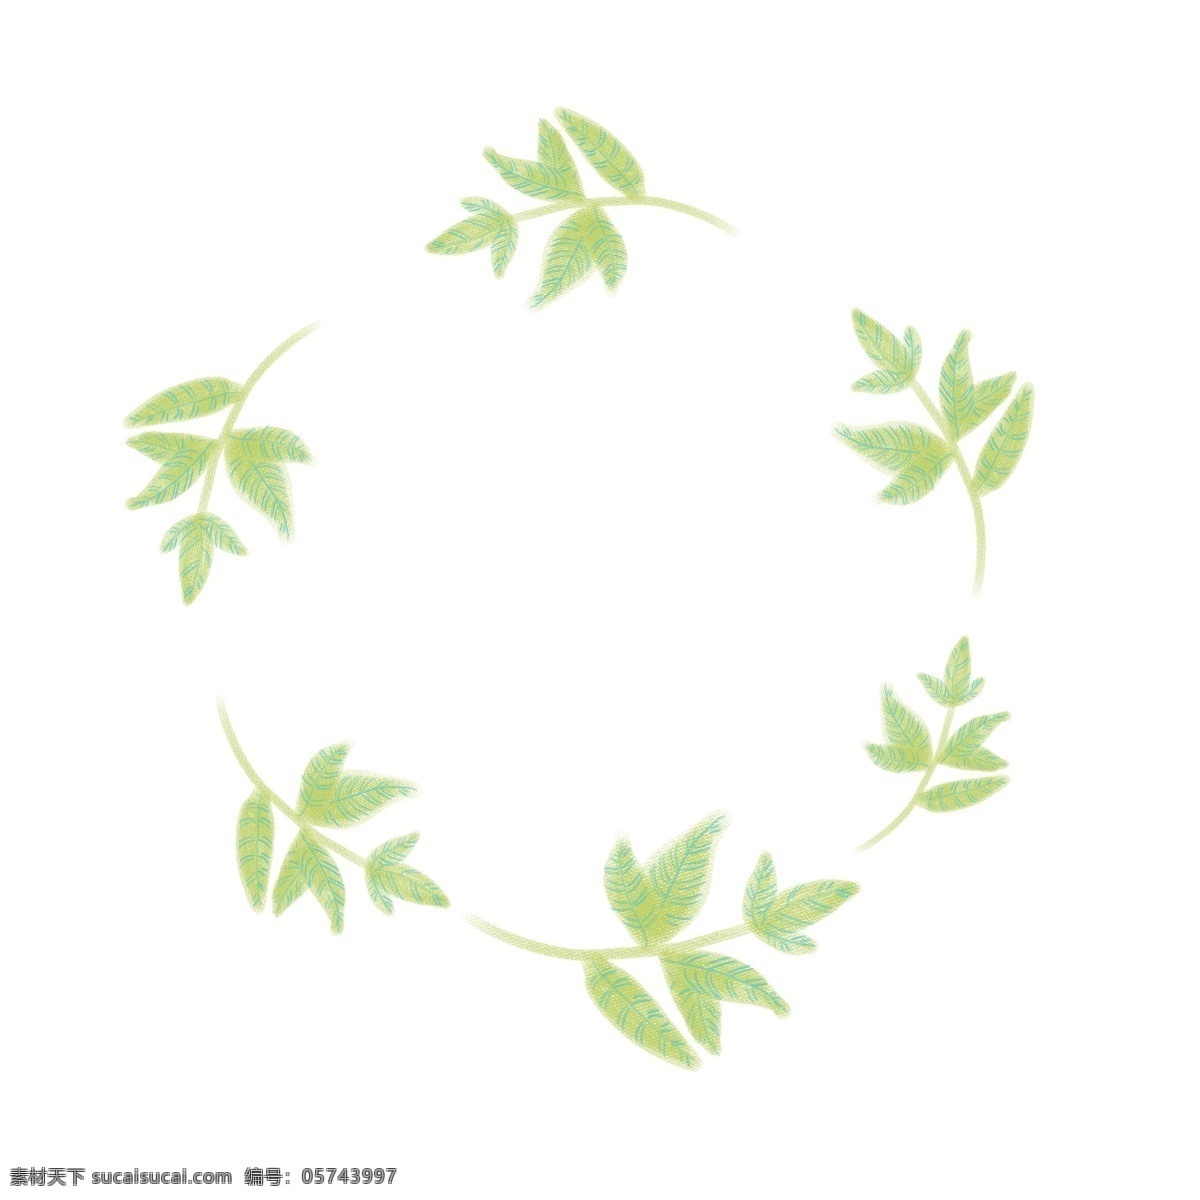 卡通 绿色 叶子 圆环 免 抠 图 绿色卡通叶子 免抠绿叶圆环 漂浮 的卡 通 卡通漂浮的 绿